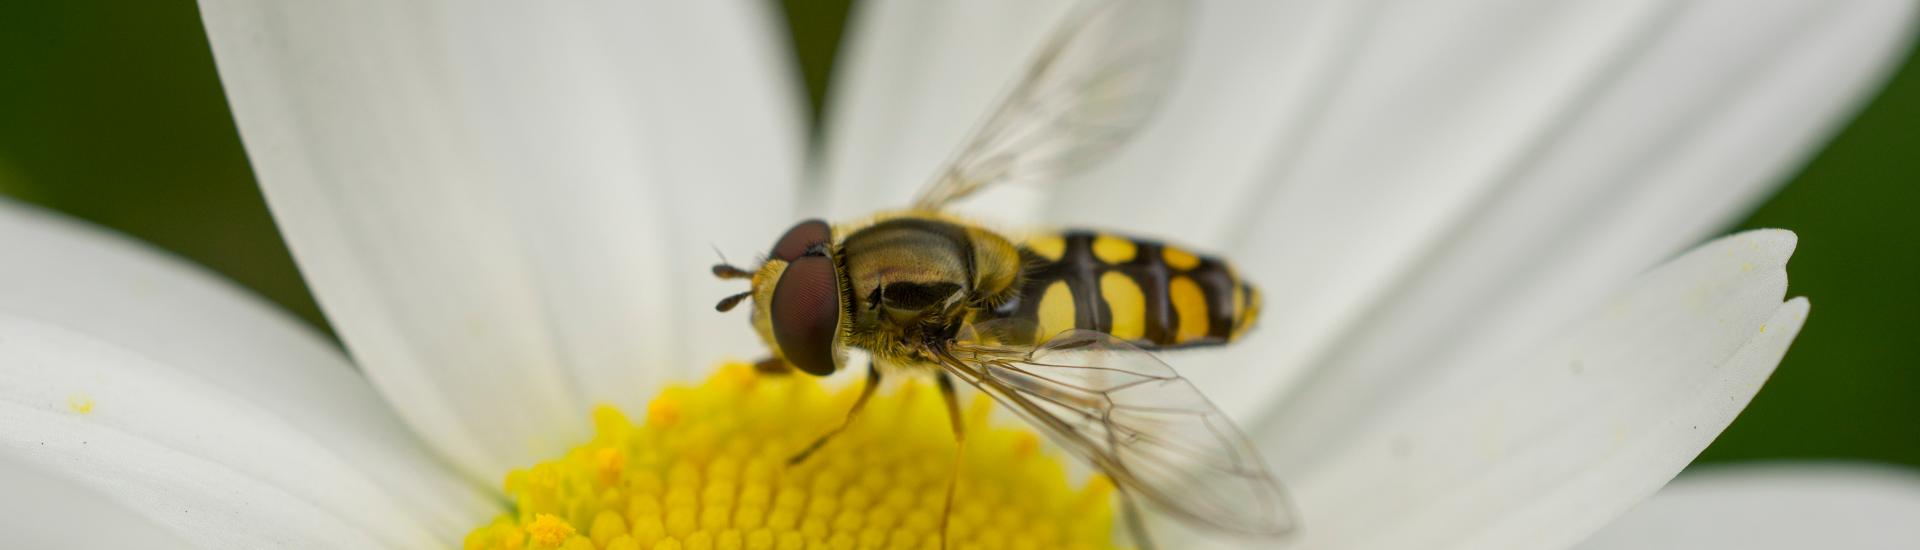 Hoverfly on daisy